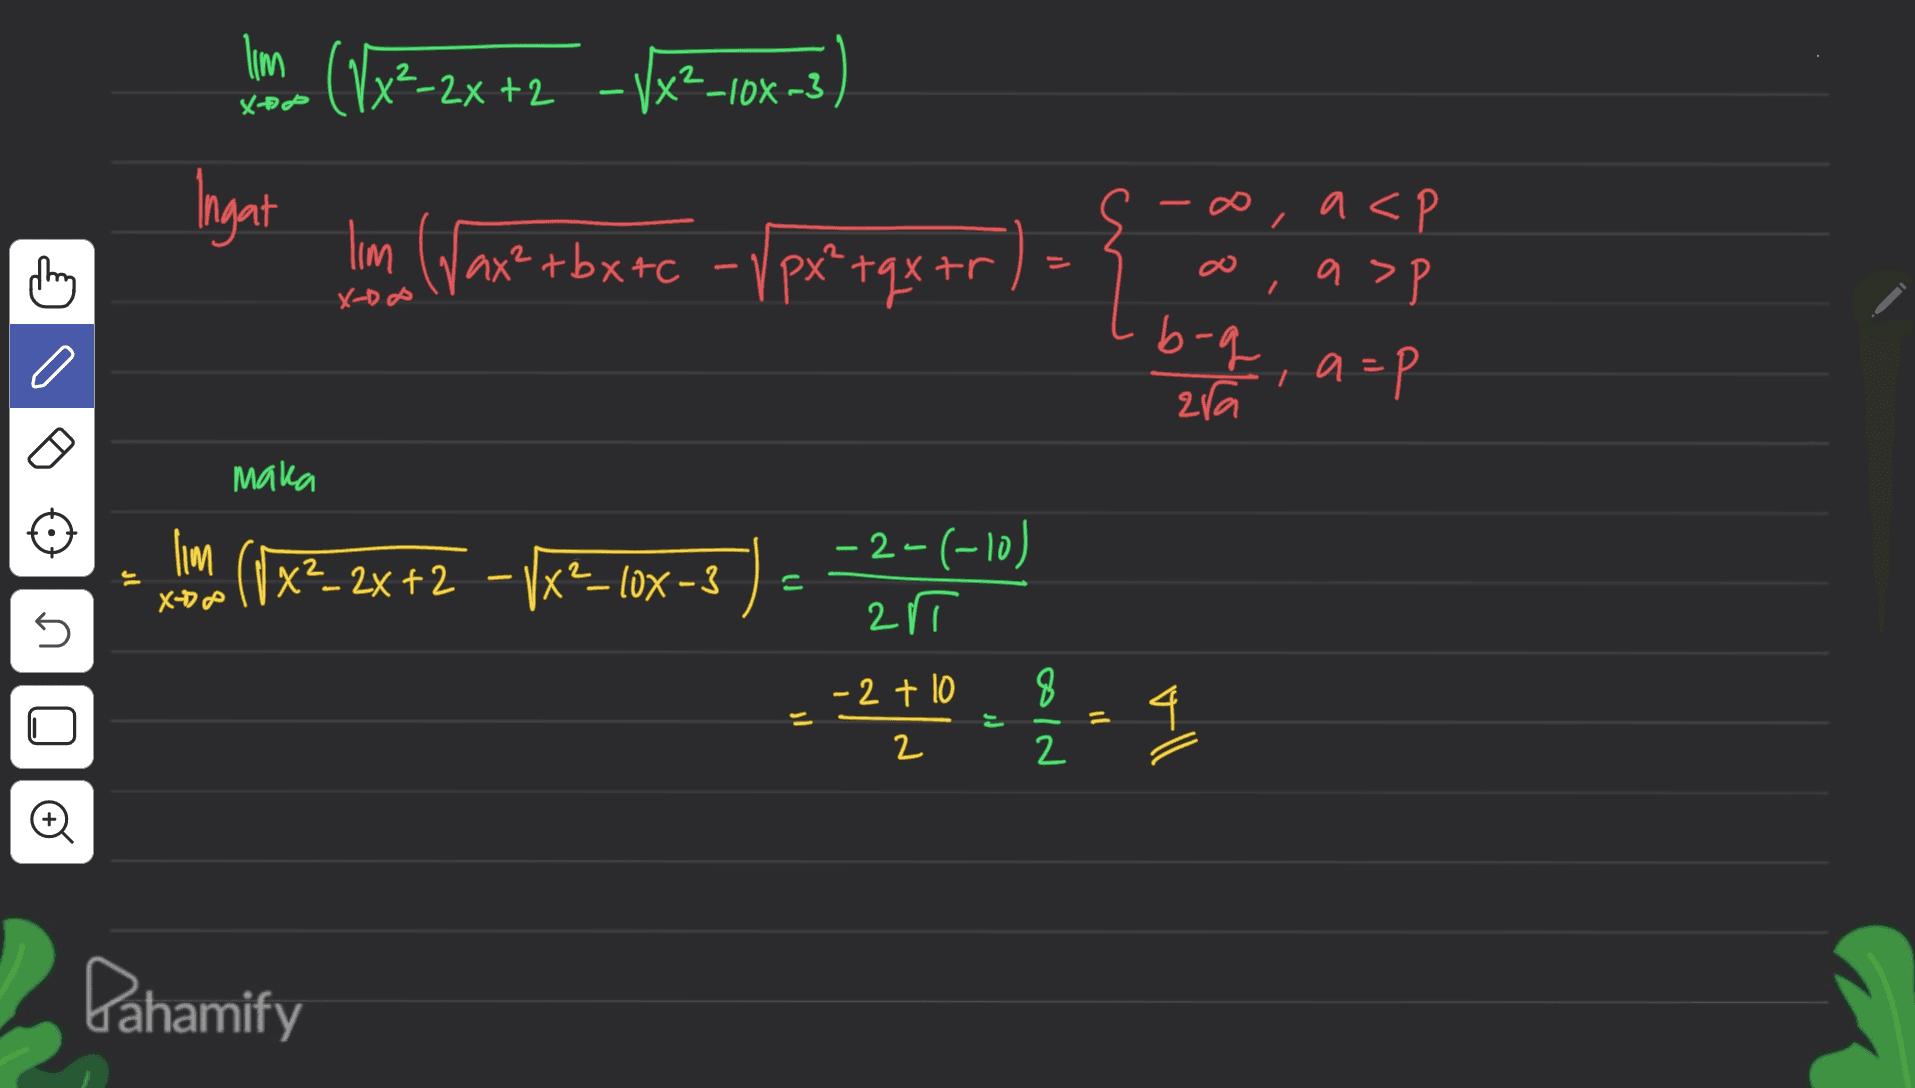 I'm (Vx²_2x+2 – Vx?-10% -3 Ingat lim (Wax² +bx+c - Vpx?tqx tr - ) - { / X- DO ,a<P a>p P b-q, a=p a zra o maka lim ( X2_2x +2 -1x2–10-3 - 2-(-10) 21 ון X- 5 - 2 + 10 을 4 Dahamify 